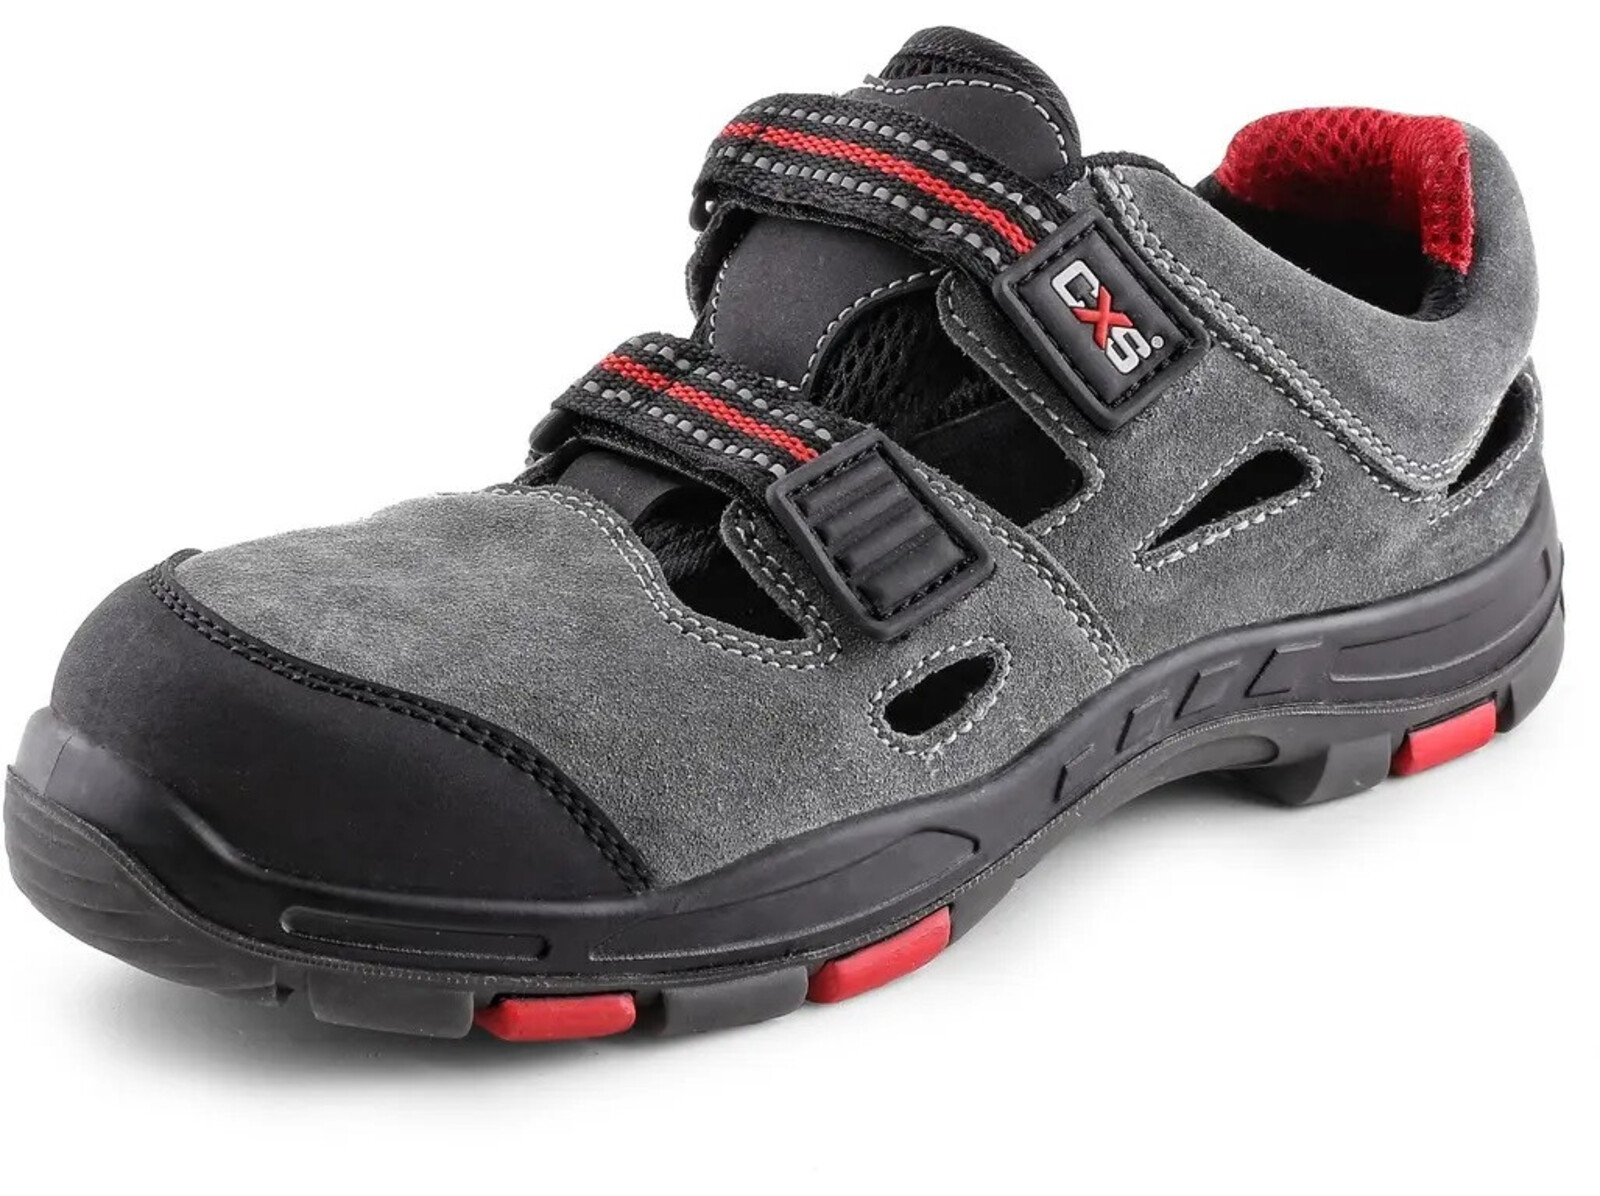 Bezpečnostné sandále CXS Rock Phyllite S1P SRA HRO MF - veľkosť: 45, farba: sivá/červená